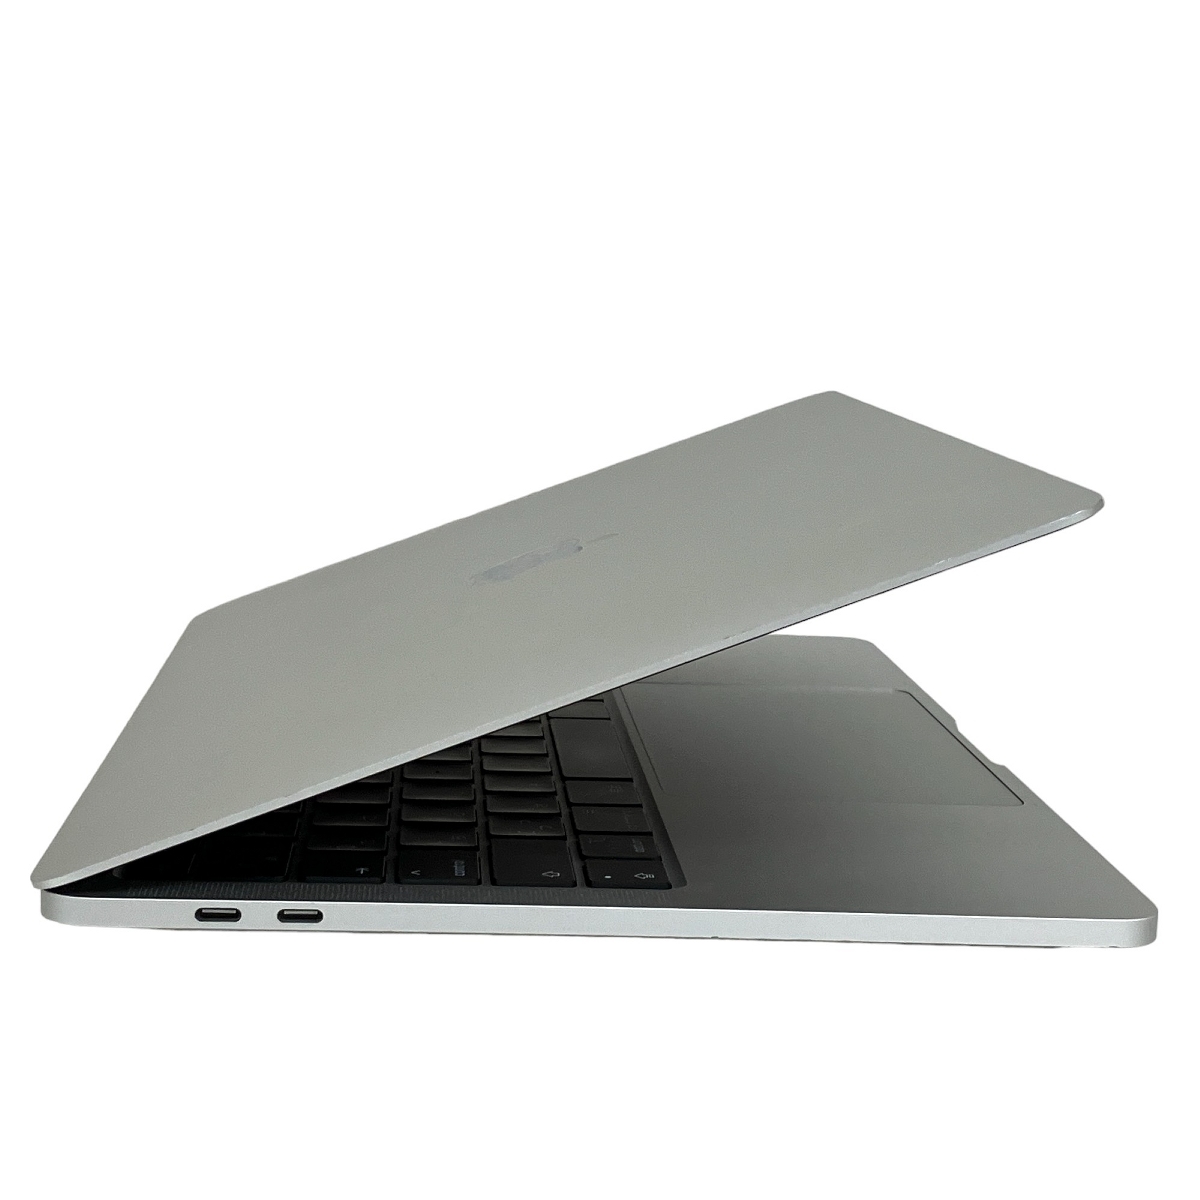 【充放電回数51回】【動作保証】 Apple MacBook Pro 13-inch ノート PC M1 2020 8C 8GB SSD 256GB Sonoma 中古 T8858750_画像8